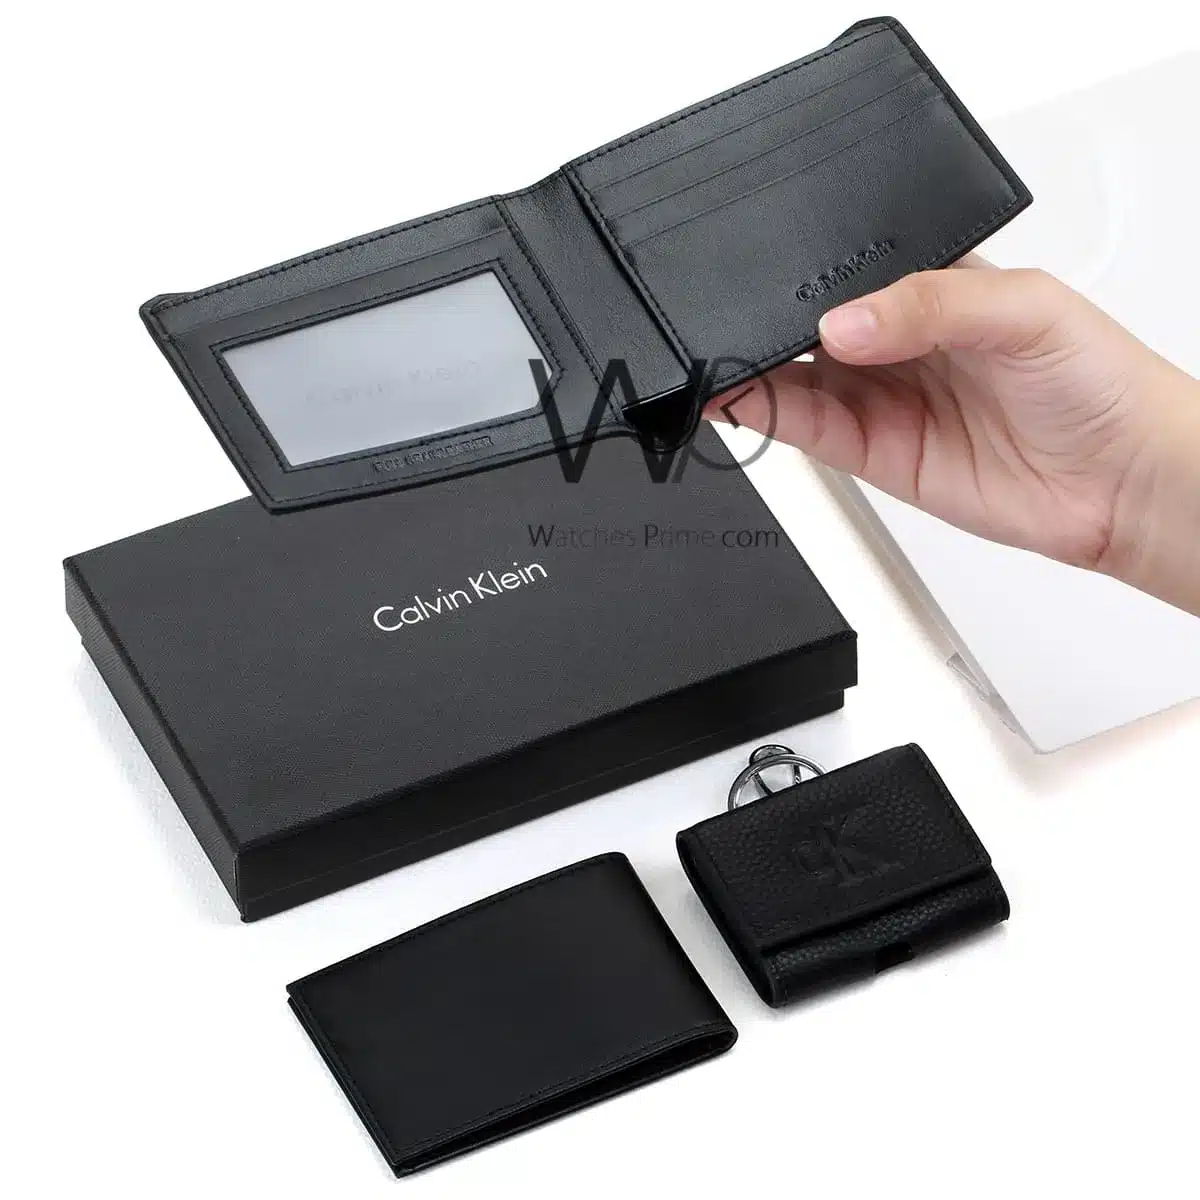 Calvin Klein CK Wallet Card Holder keychain | Watches Prime